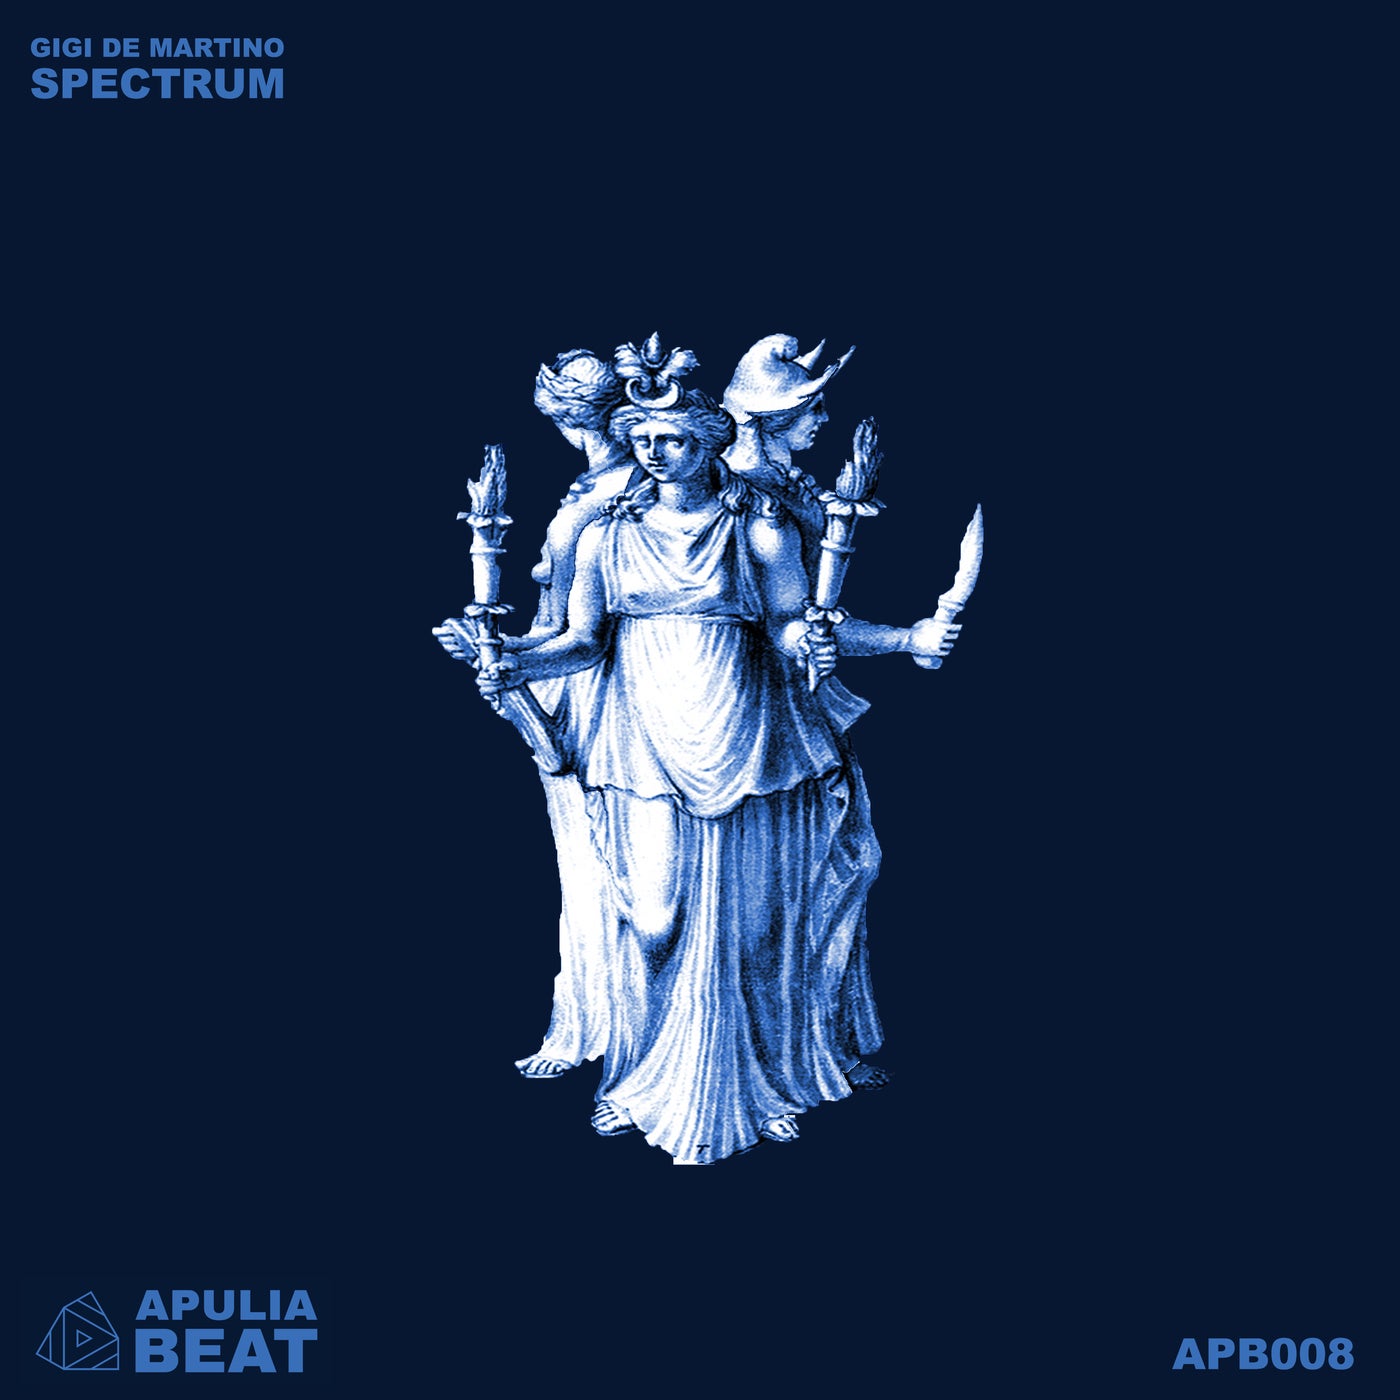 Gigi de Martino - Spectrum [Apulia Beat]